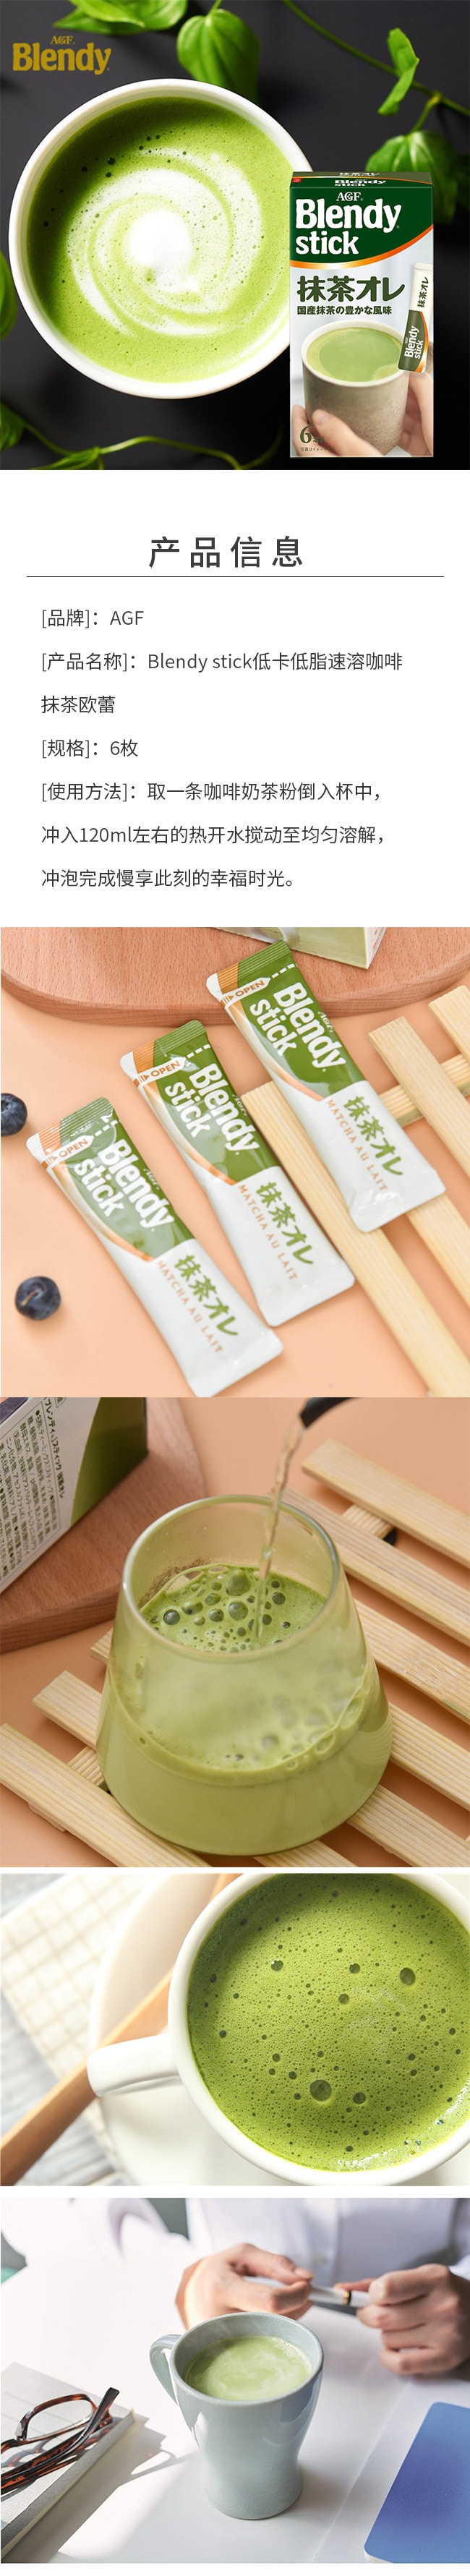 【日本直邮】AGF Blendy stick 低卡低脂速溶咖啡抹茶欧蕾 6枚入